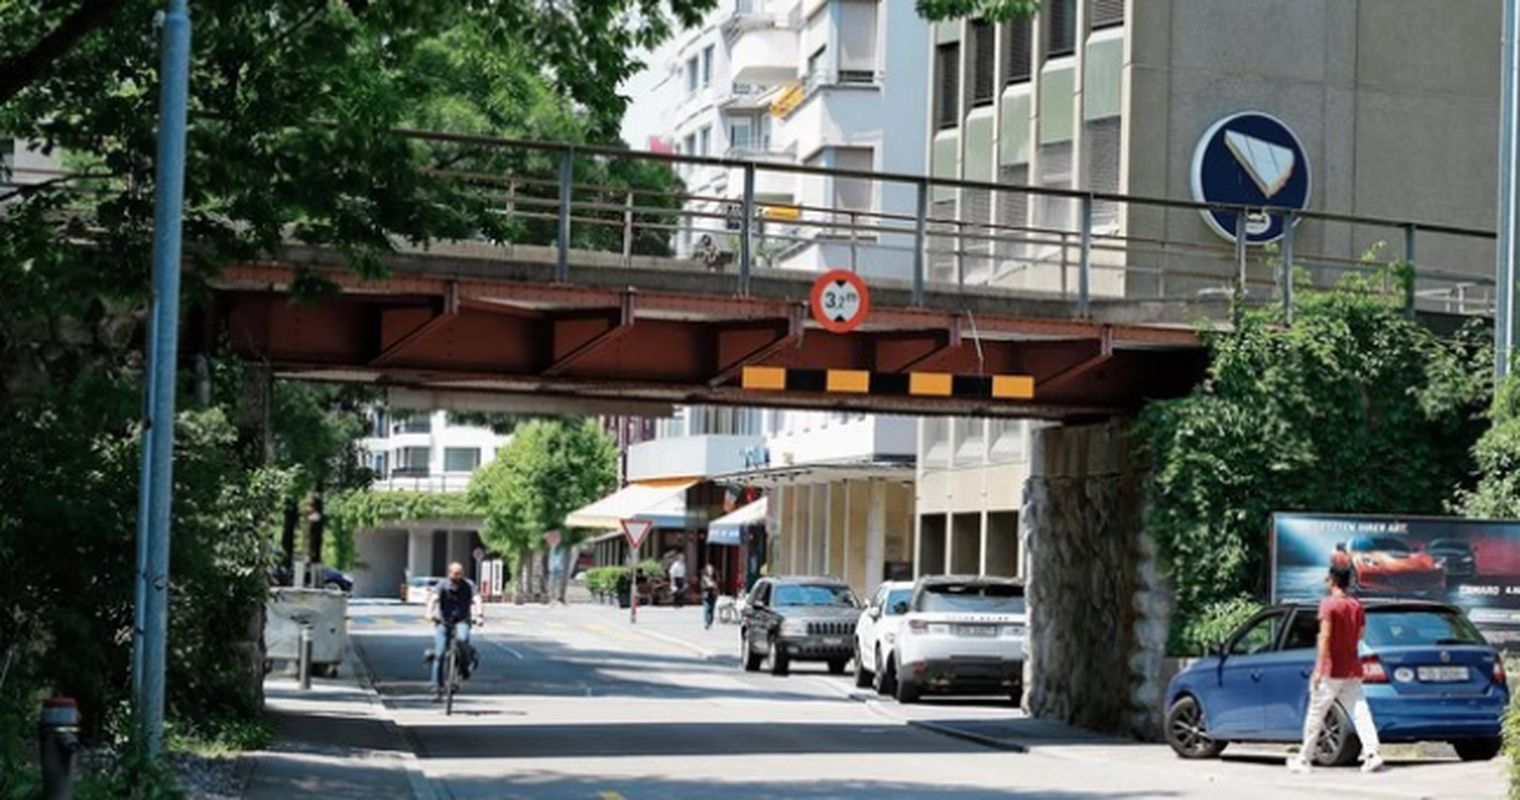 Teile der Zuger Gotthardstrasse monatelang gesperrt